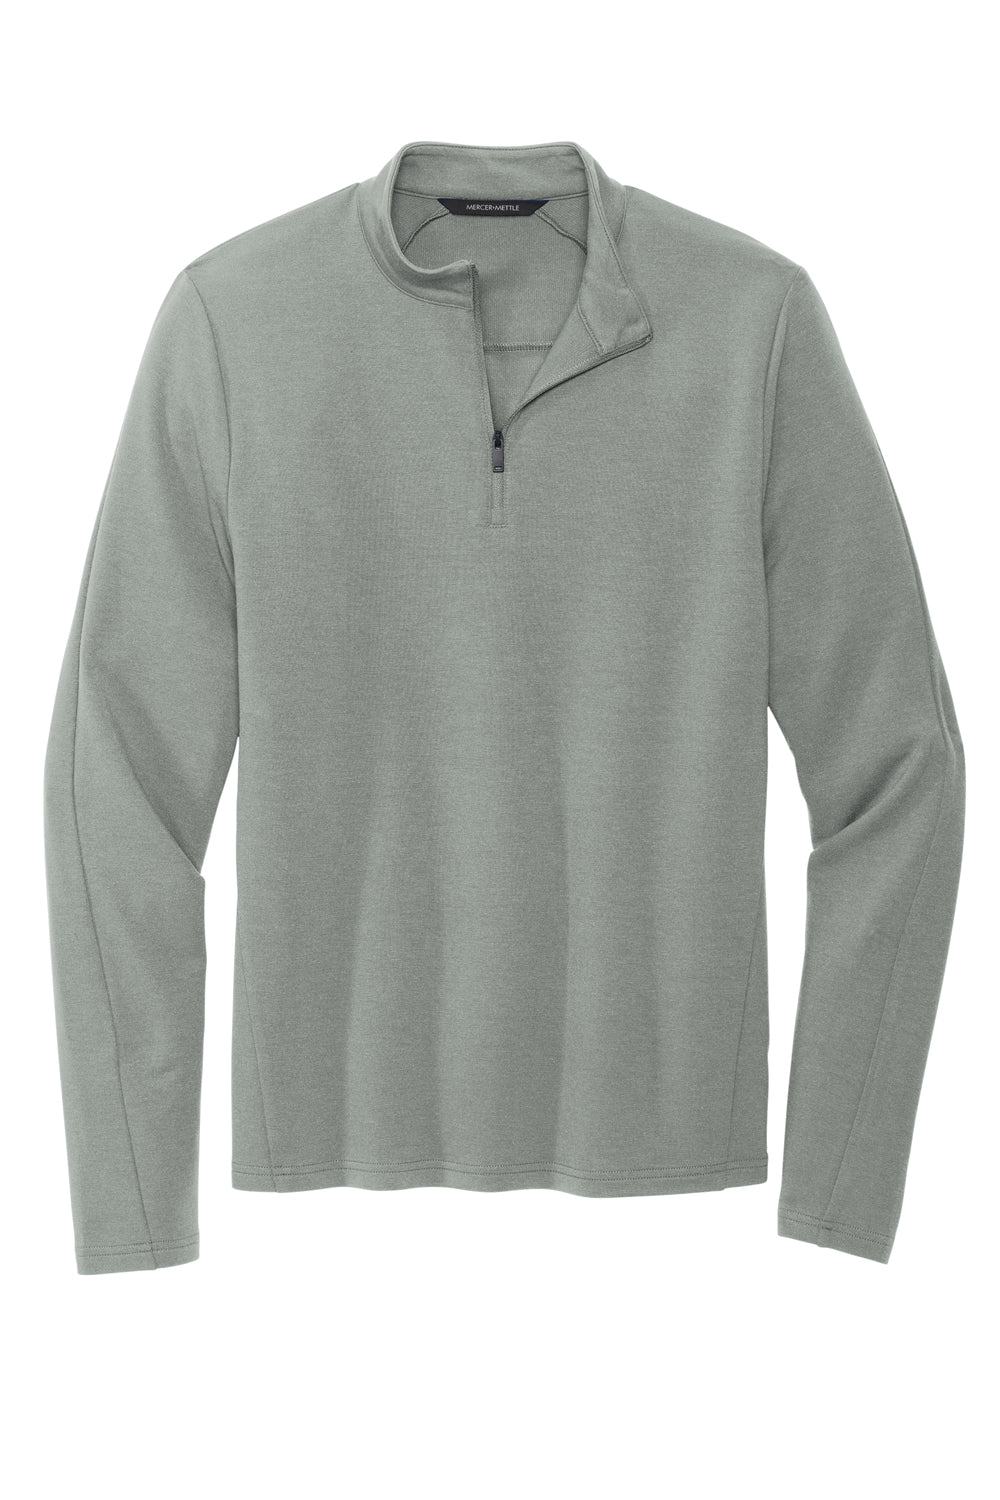 Mercer+Mettle MM3010 Stretch 1/4 Zip Sweatshirt Gusty Grey Flat Front